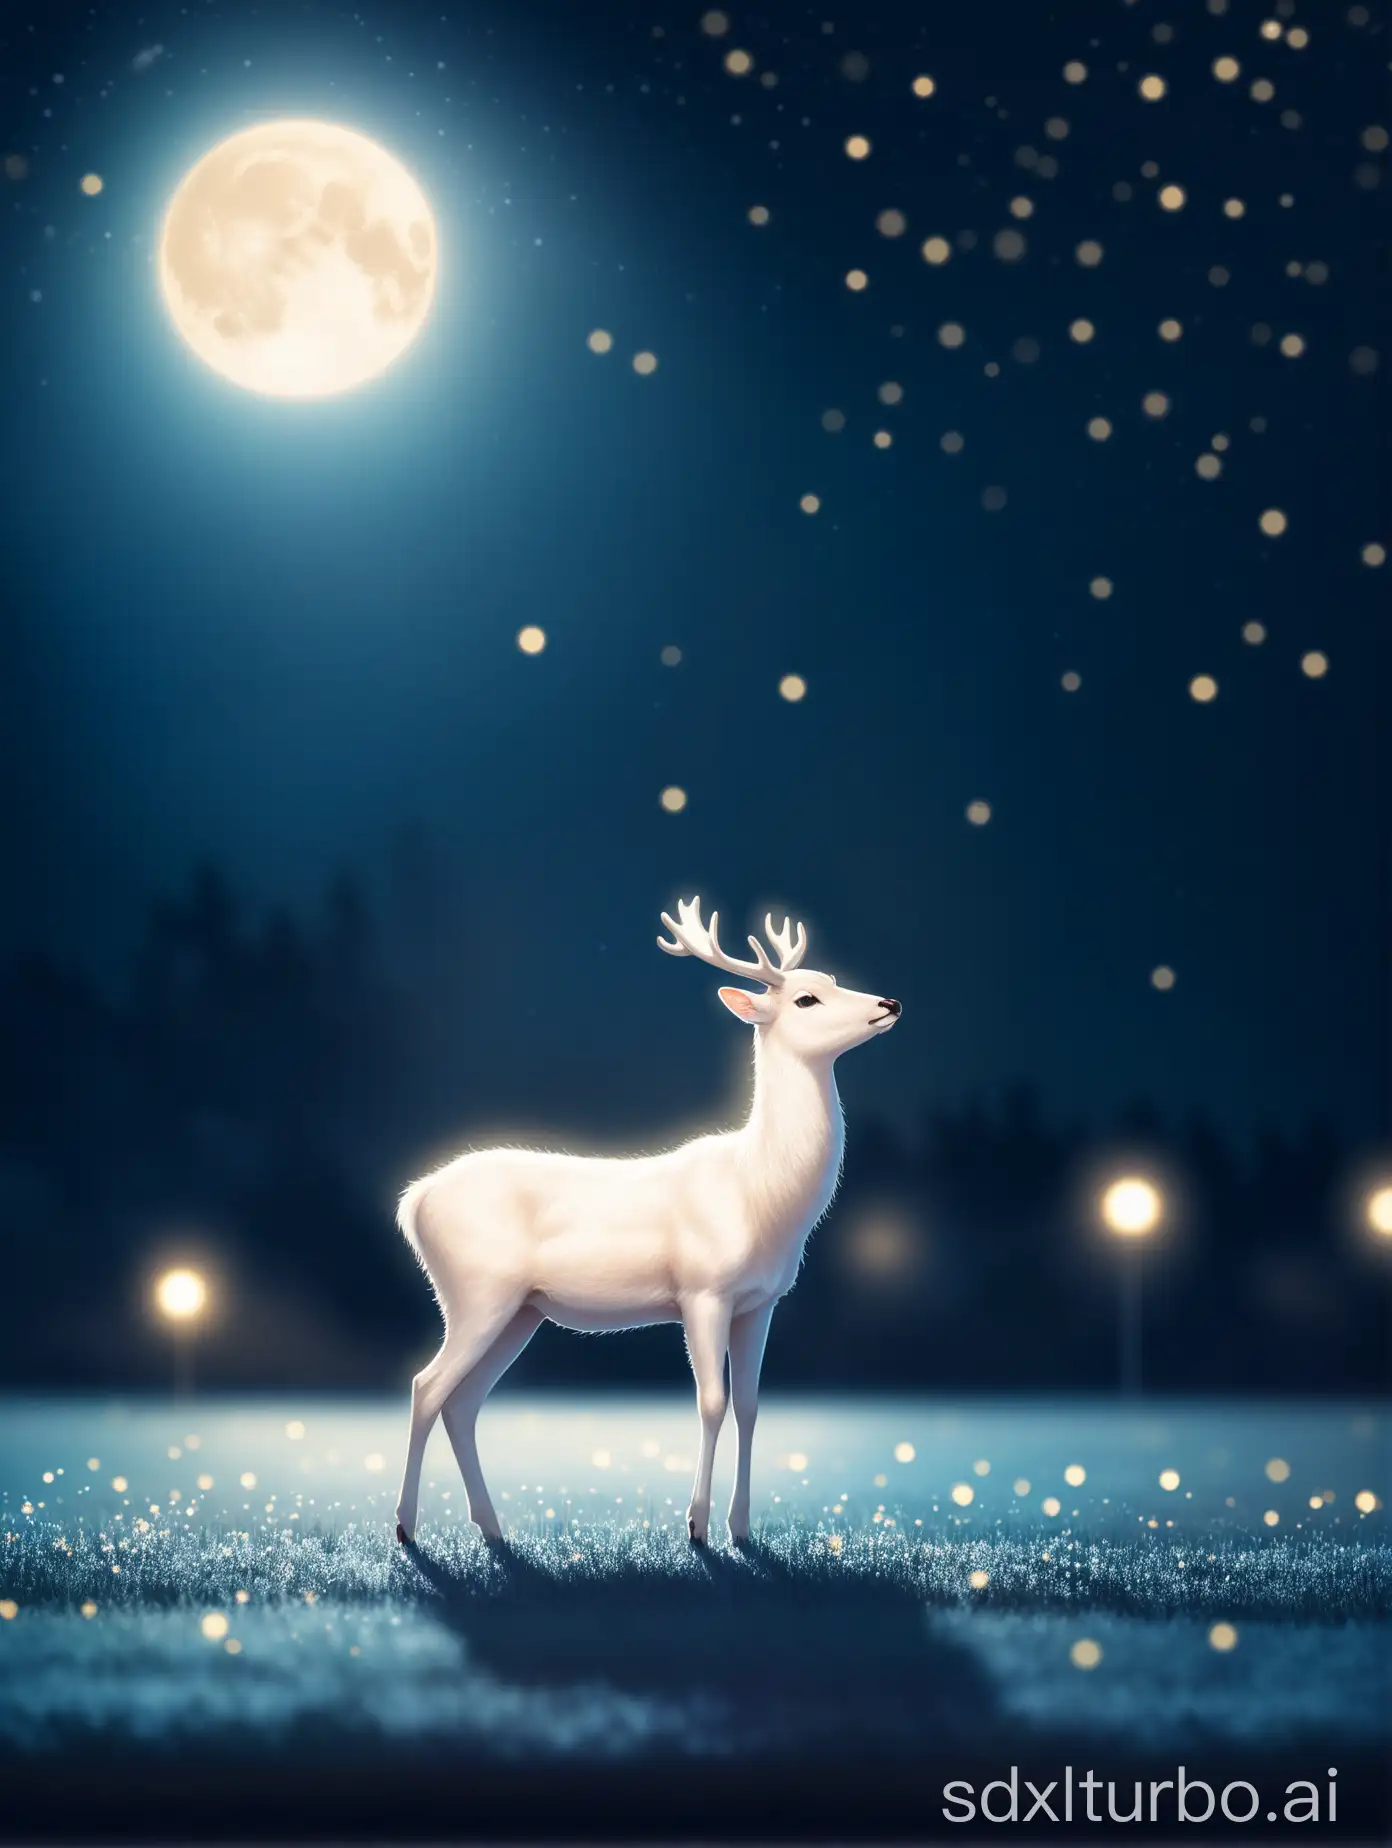 Enchanting-White-Deer-in-Moonlit-Night